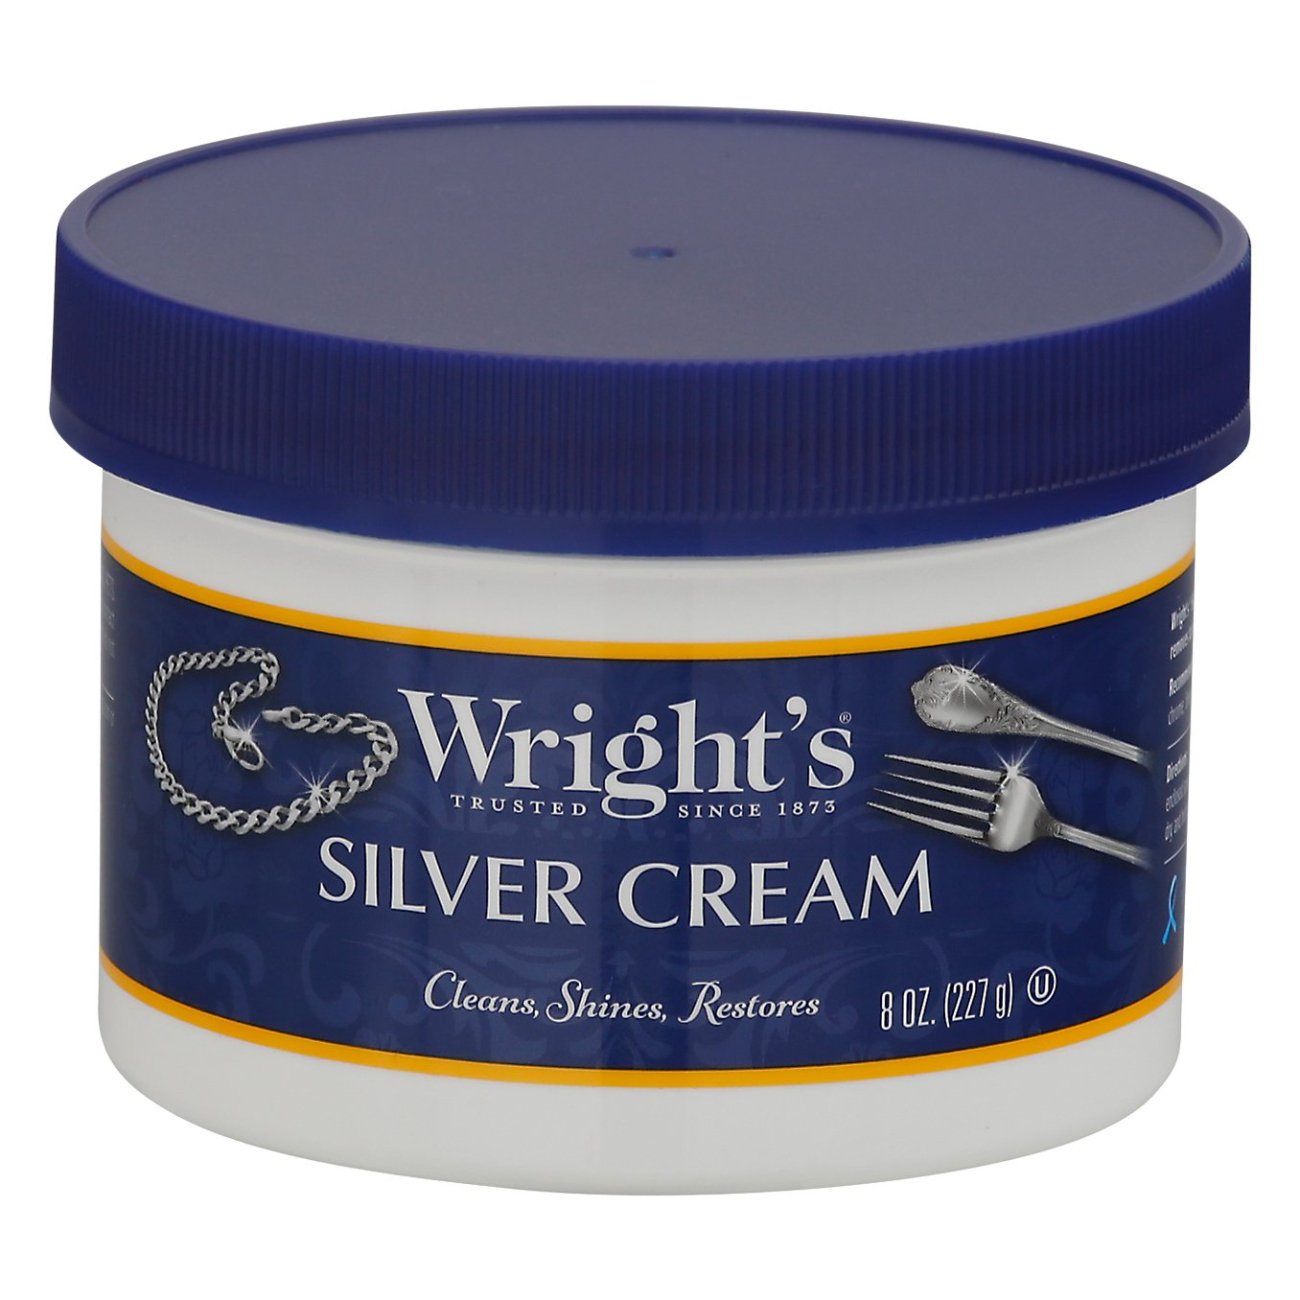 Wright's Silver Cream 4 Lb. Tub (4 per Case)